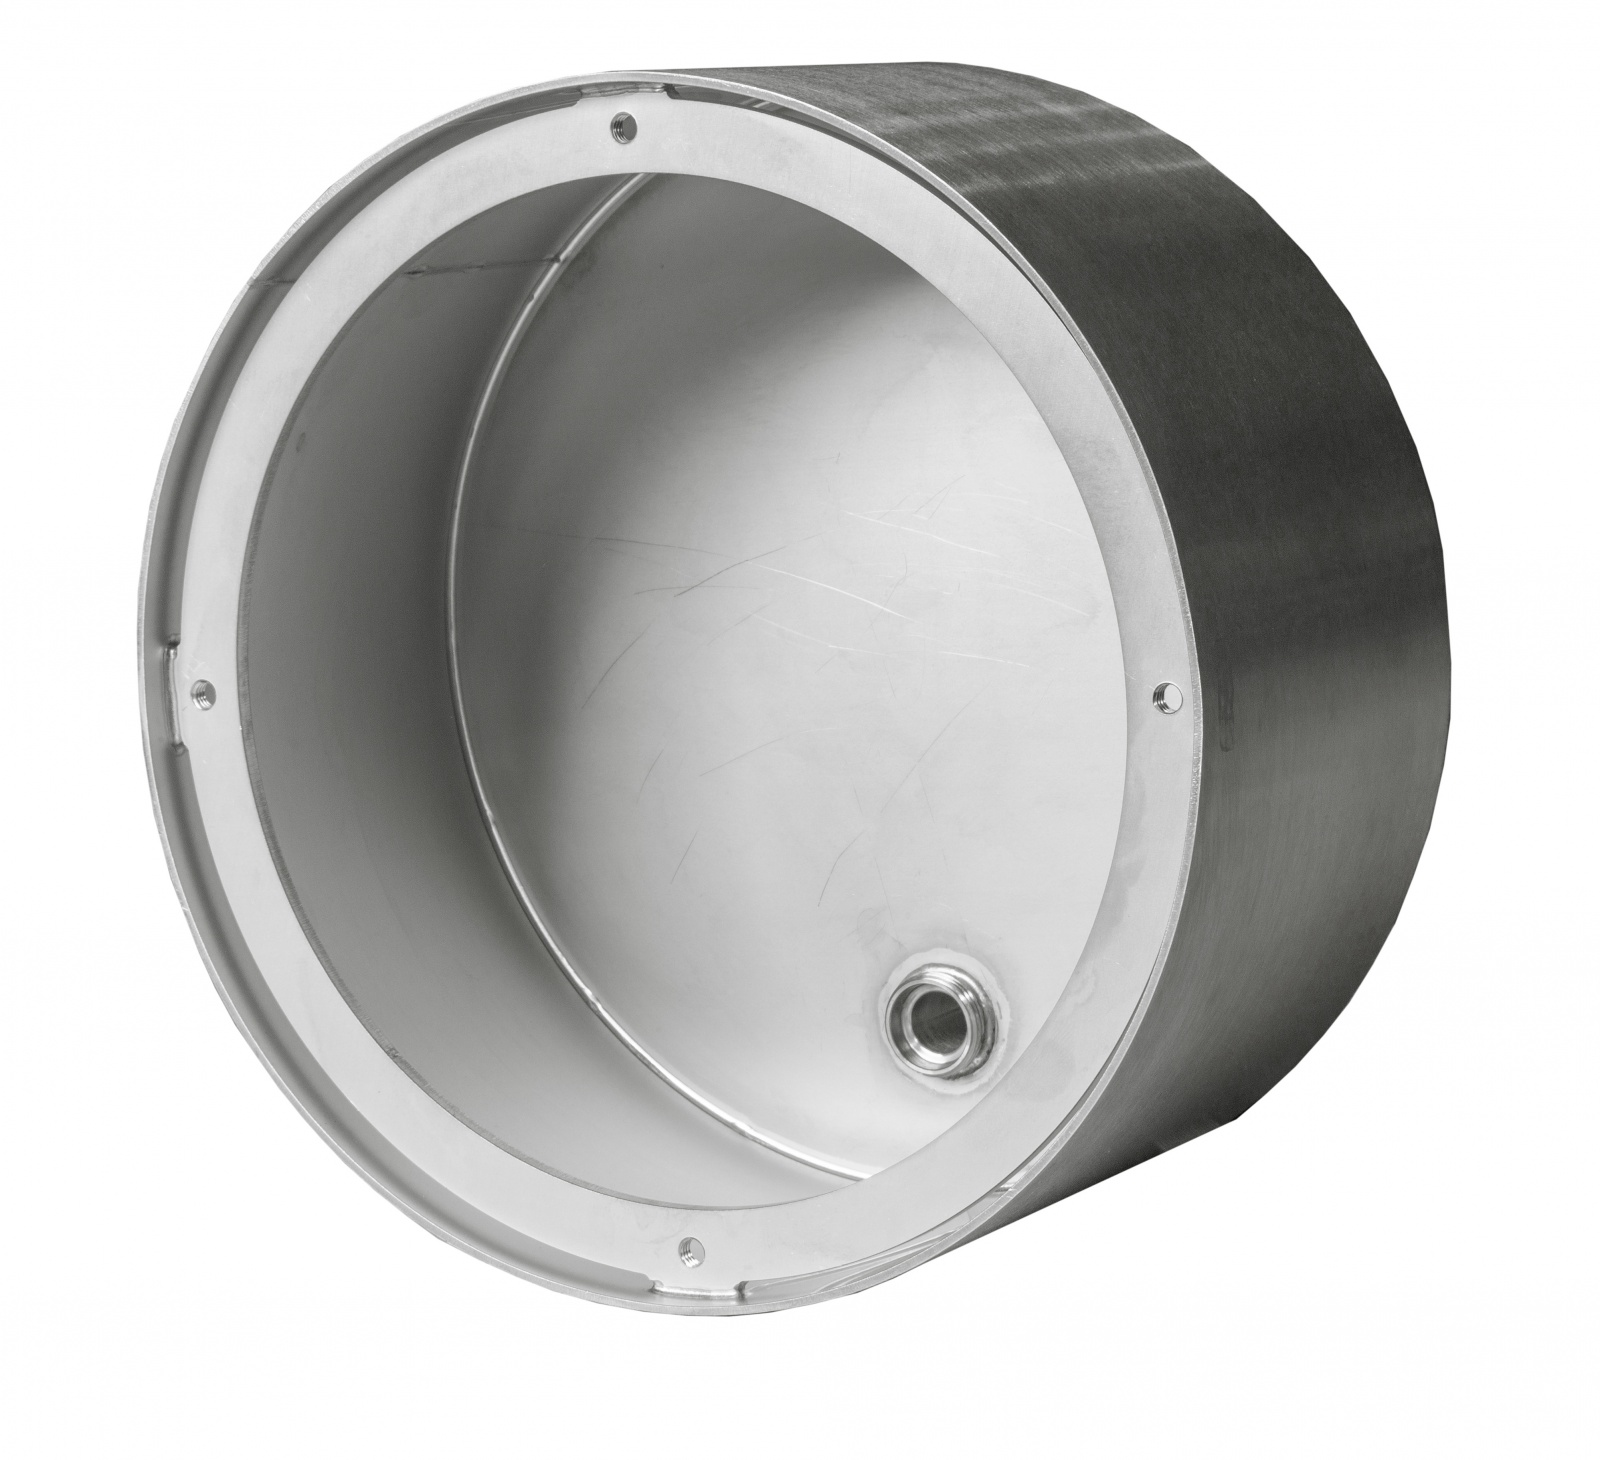 Boitier d’encastrement en inox 316L à souder, pour projecteur et haut-parleur subaquatique ø 270 mm, pour bassin inox. 